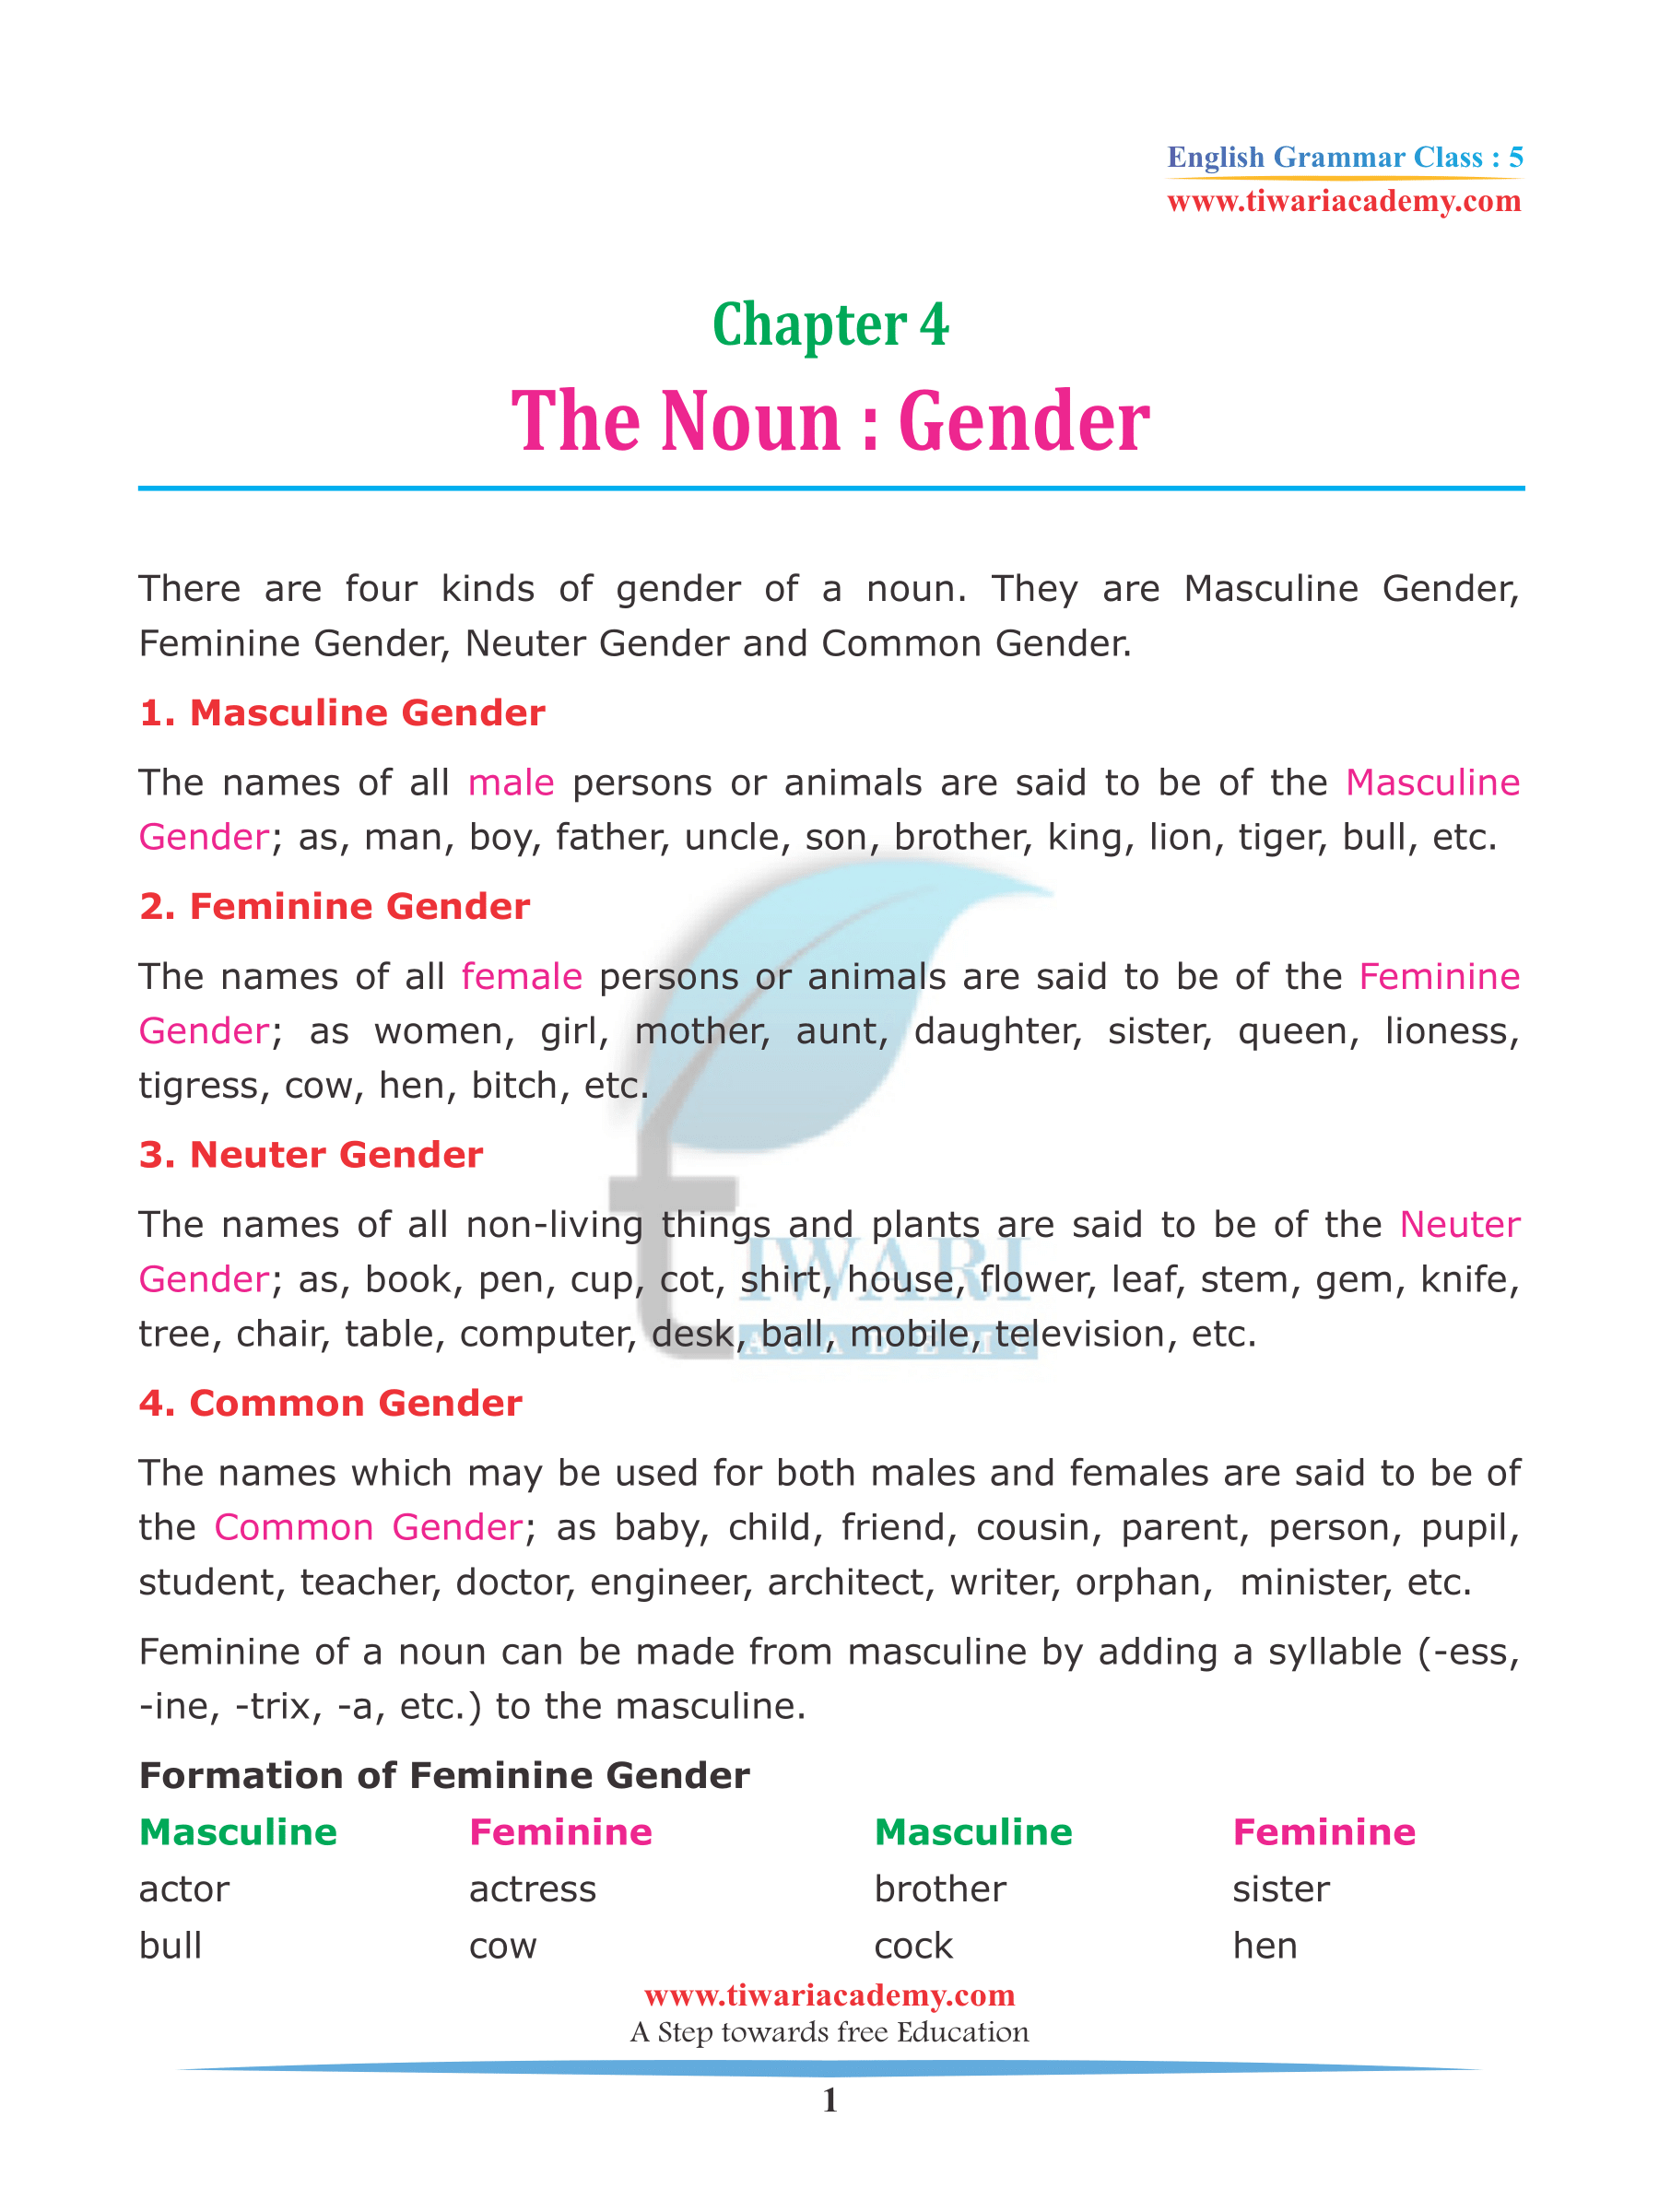 Class 5 English Grammar Chapter 4 The Noun Gender for 2022-2023.